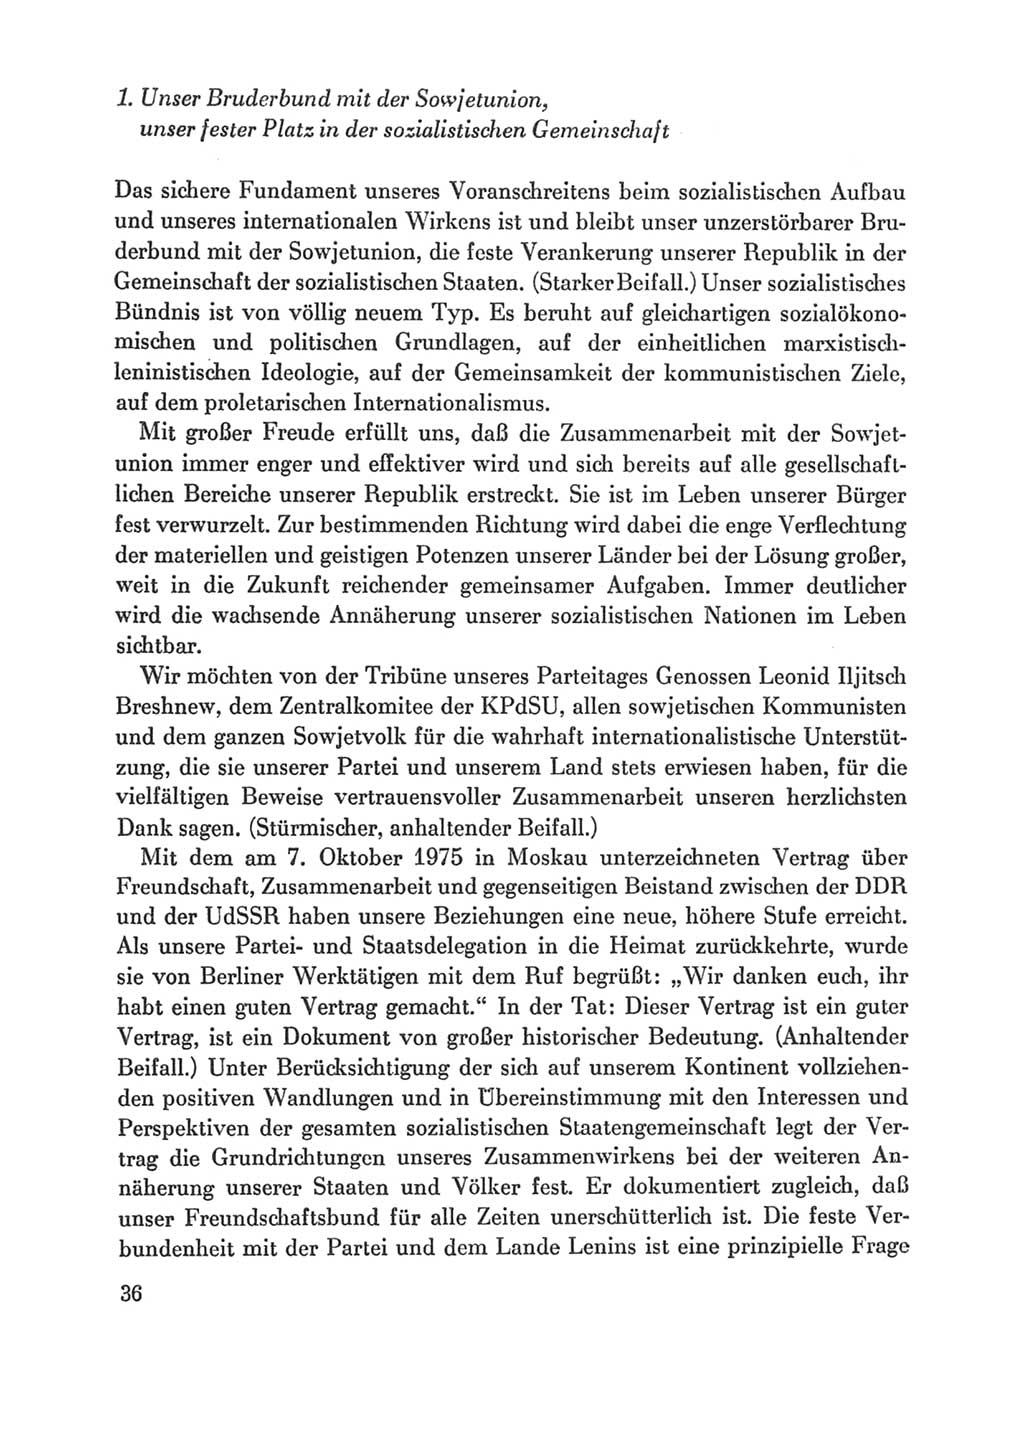 Protokoll der Verhandlungen des Ⅸ. Parteitages der Sozialistischen Einheitspartei Deutschlands (SED) [Deutsche Demokratische Republik (DDR)] 1976, Band 1, Seite 36 (Prot. Verh. Ⅸ. PT SED DDR 1976, Bd. 1, S. 36)